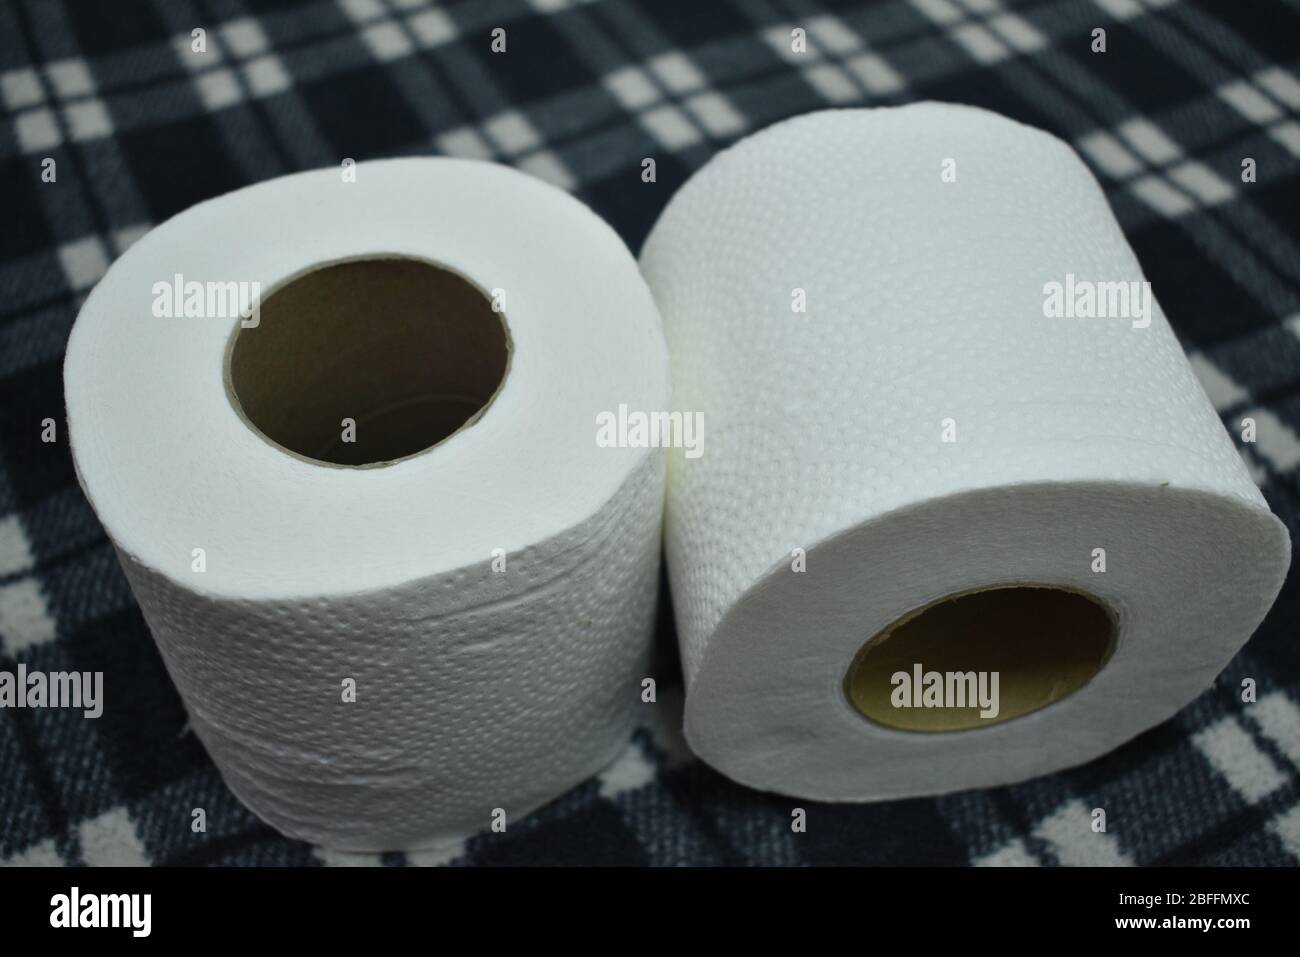 Vue détaillée des rouleaux de papier toilette isolés sur fond noir Banque D'Images